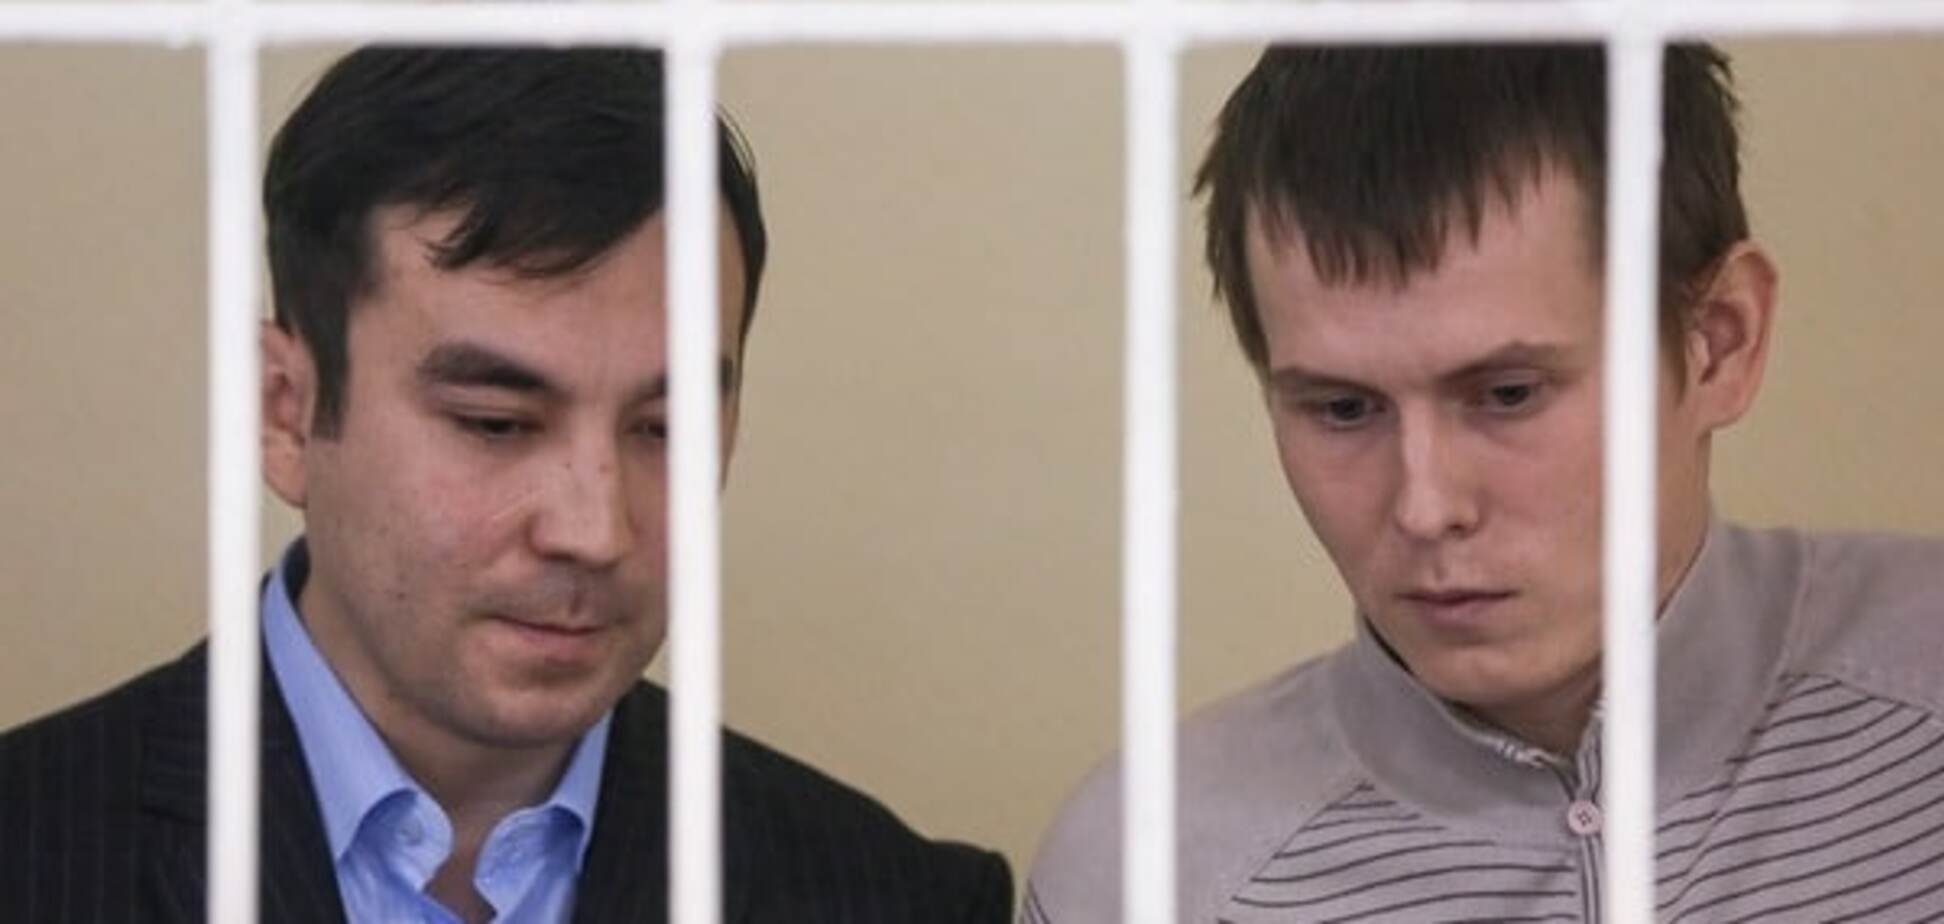 Затягивают обмен: адвокат ГРУшников заявила, что приговор будет обжалован